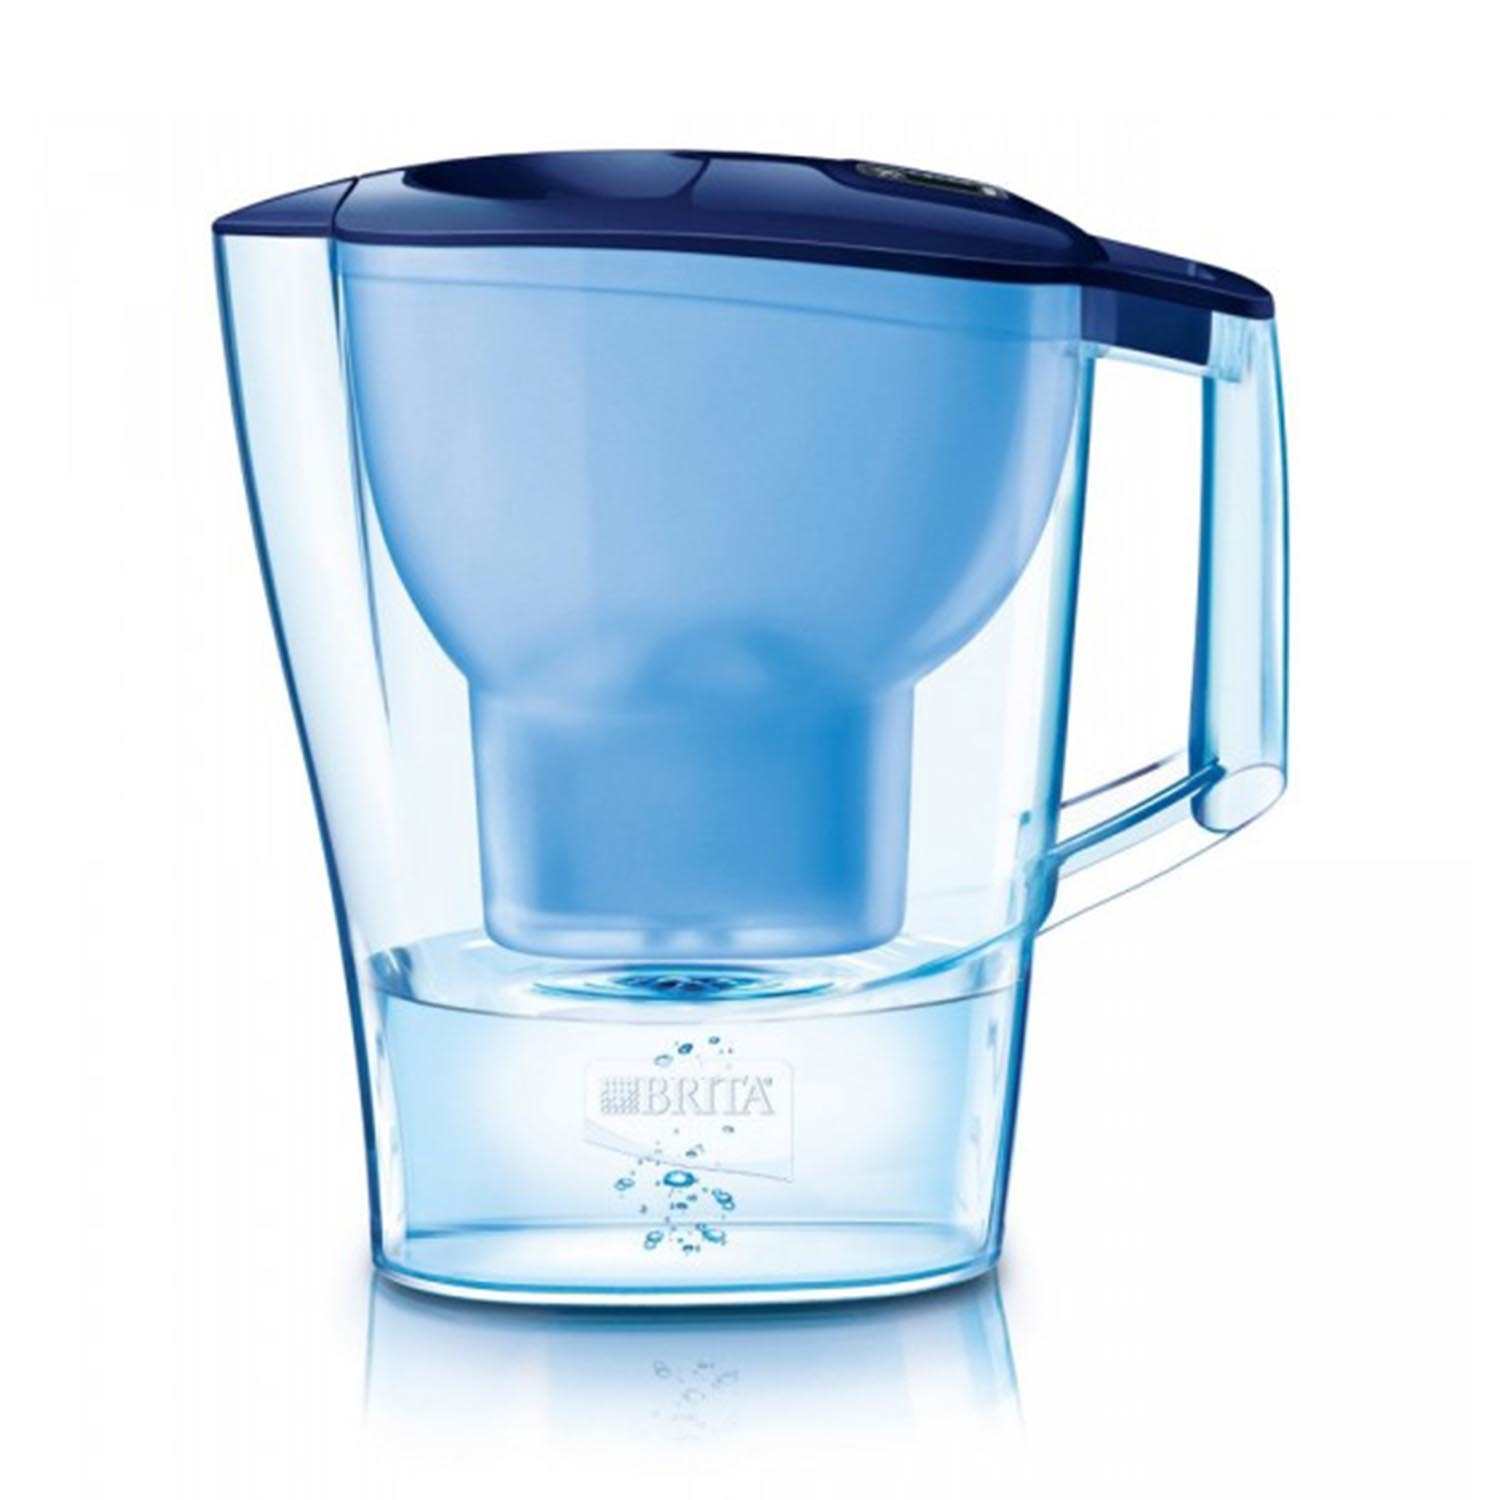 Brita Wasserfilter Aluna Cool blau 1,4l